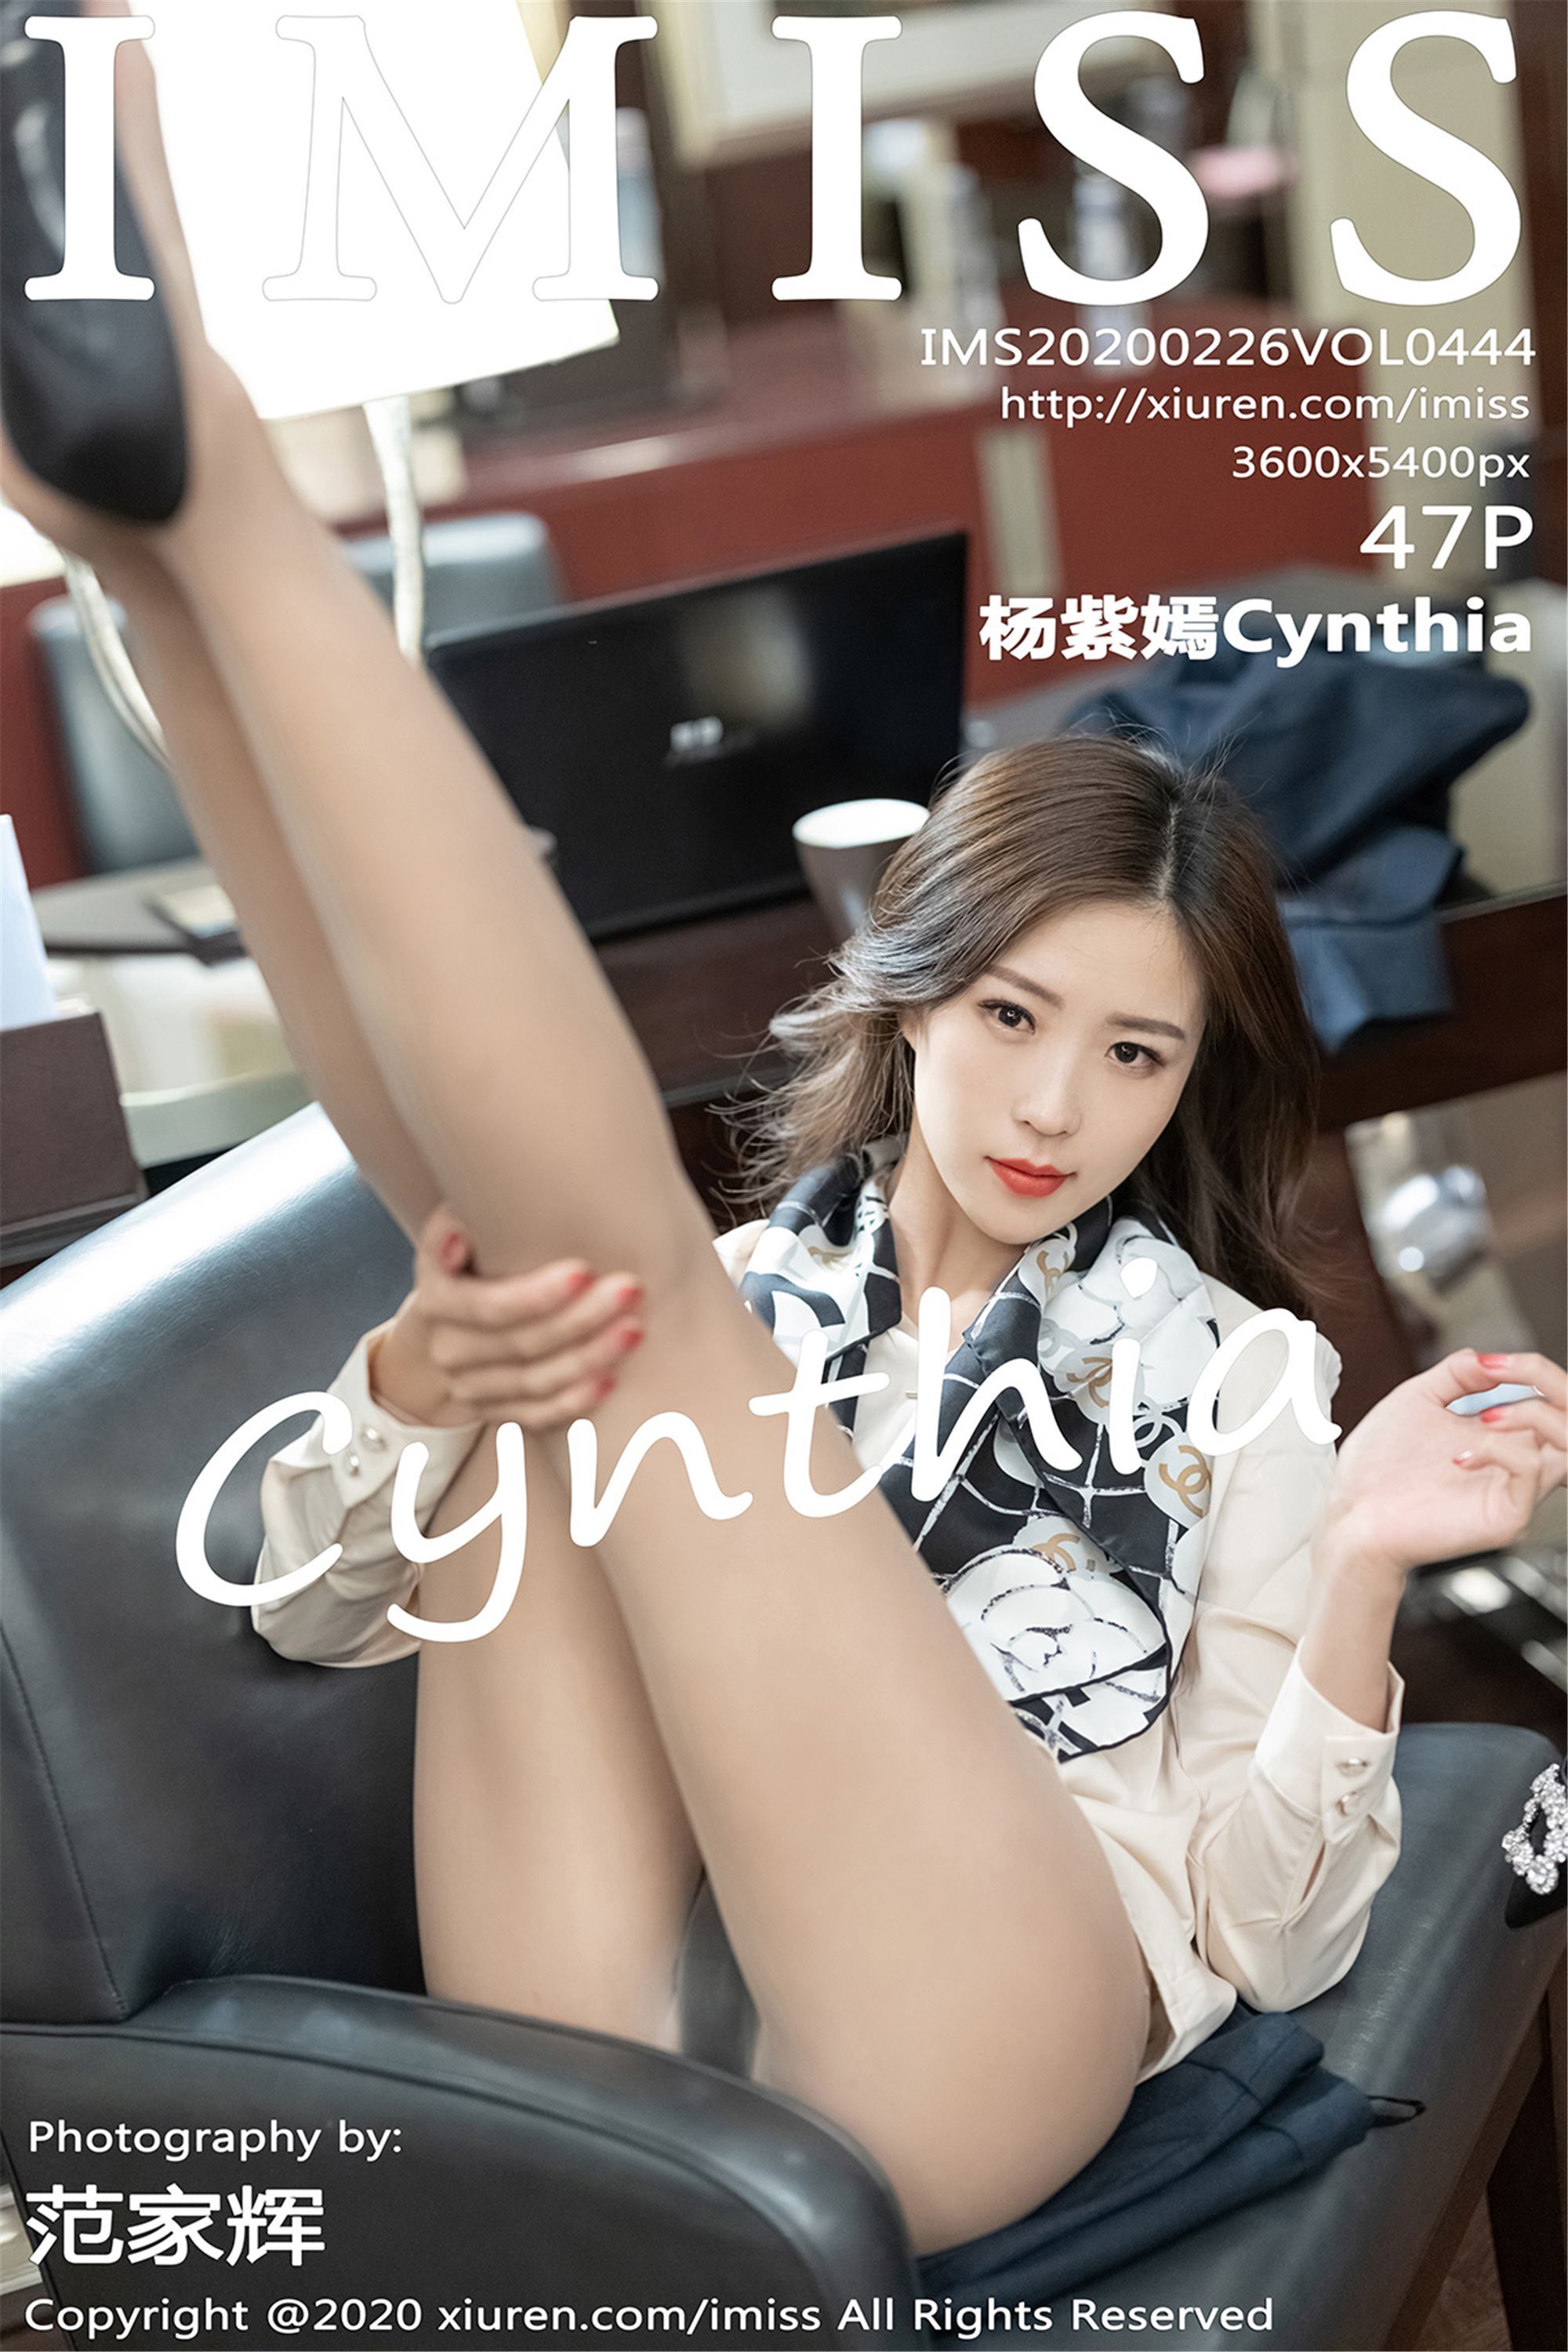 Imiss amiss 2020.02.26 vol.444 Yang Ziyan Cynthia